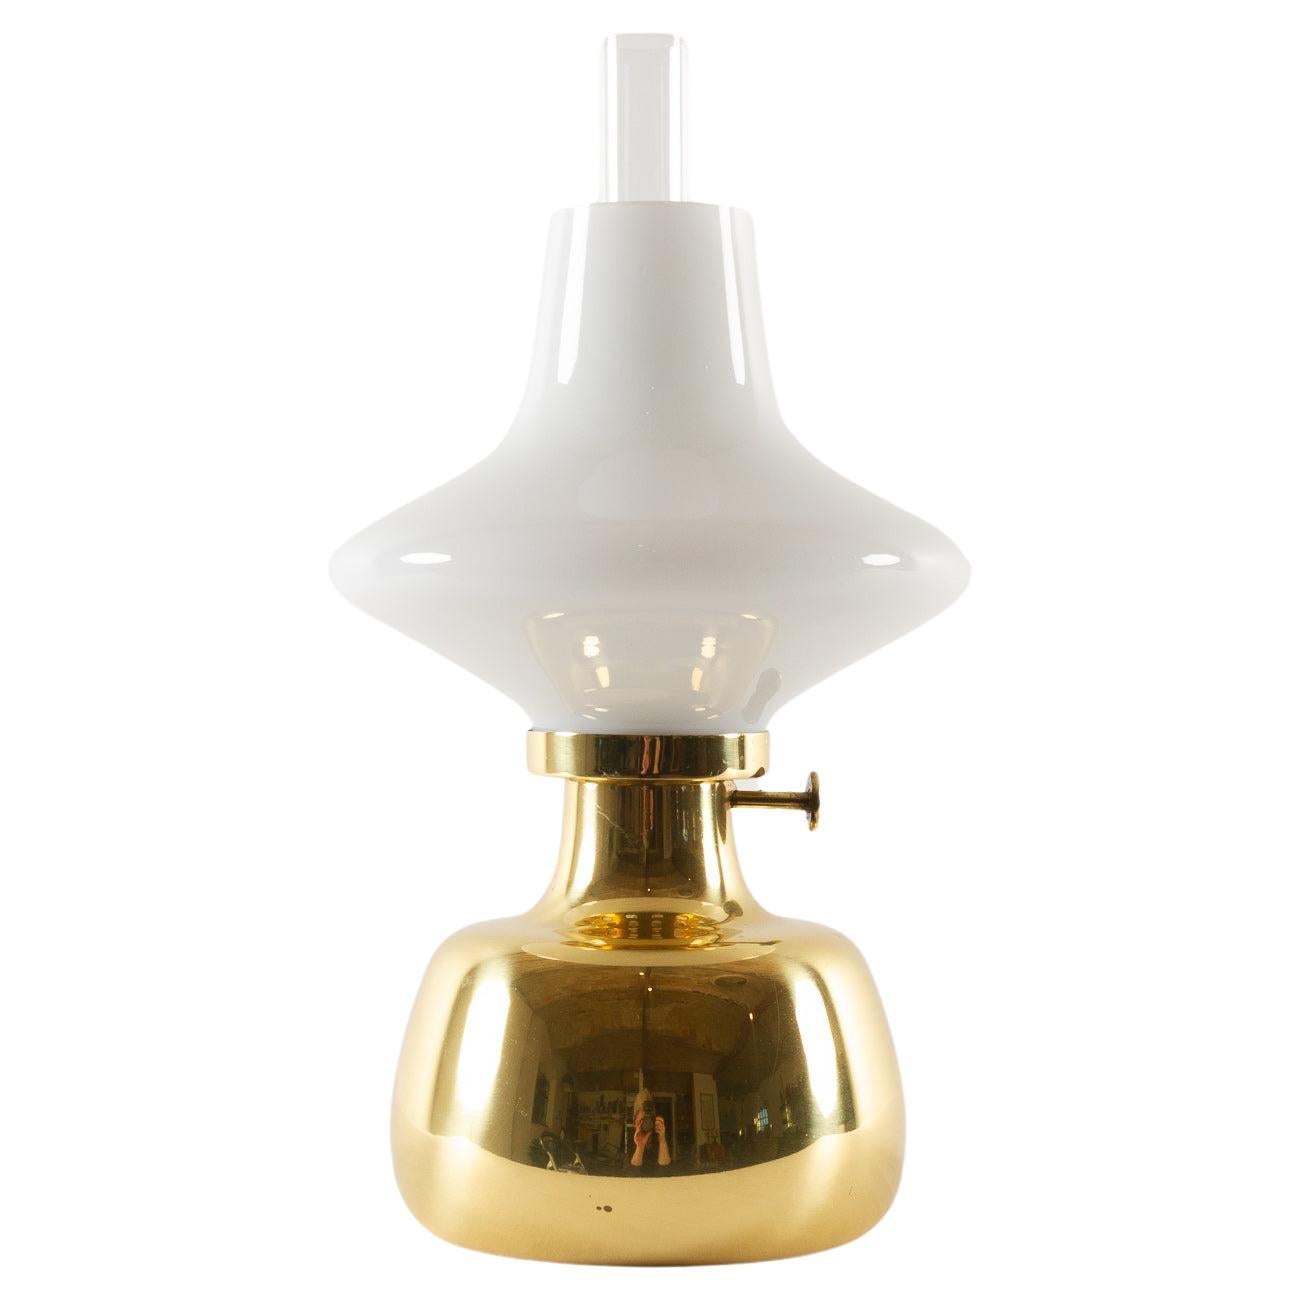 Petronella-Lampe von Henning Koppel für Louis Poulsen, 1960er Jahre